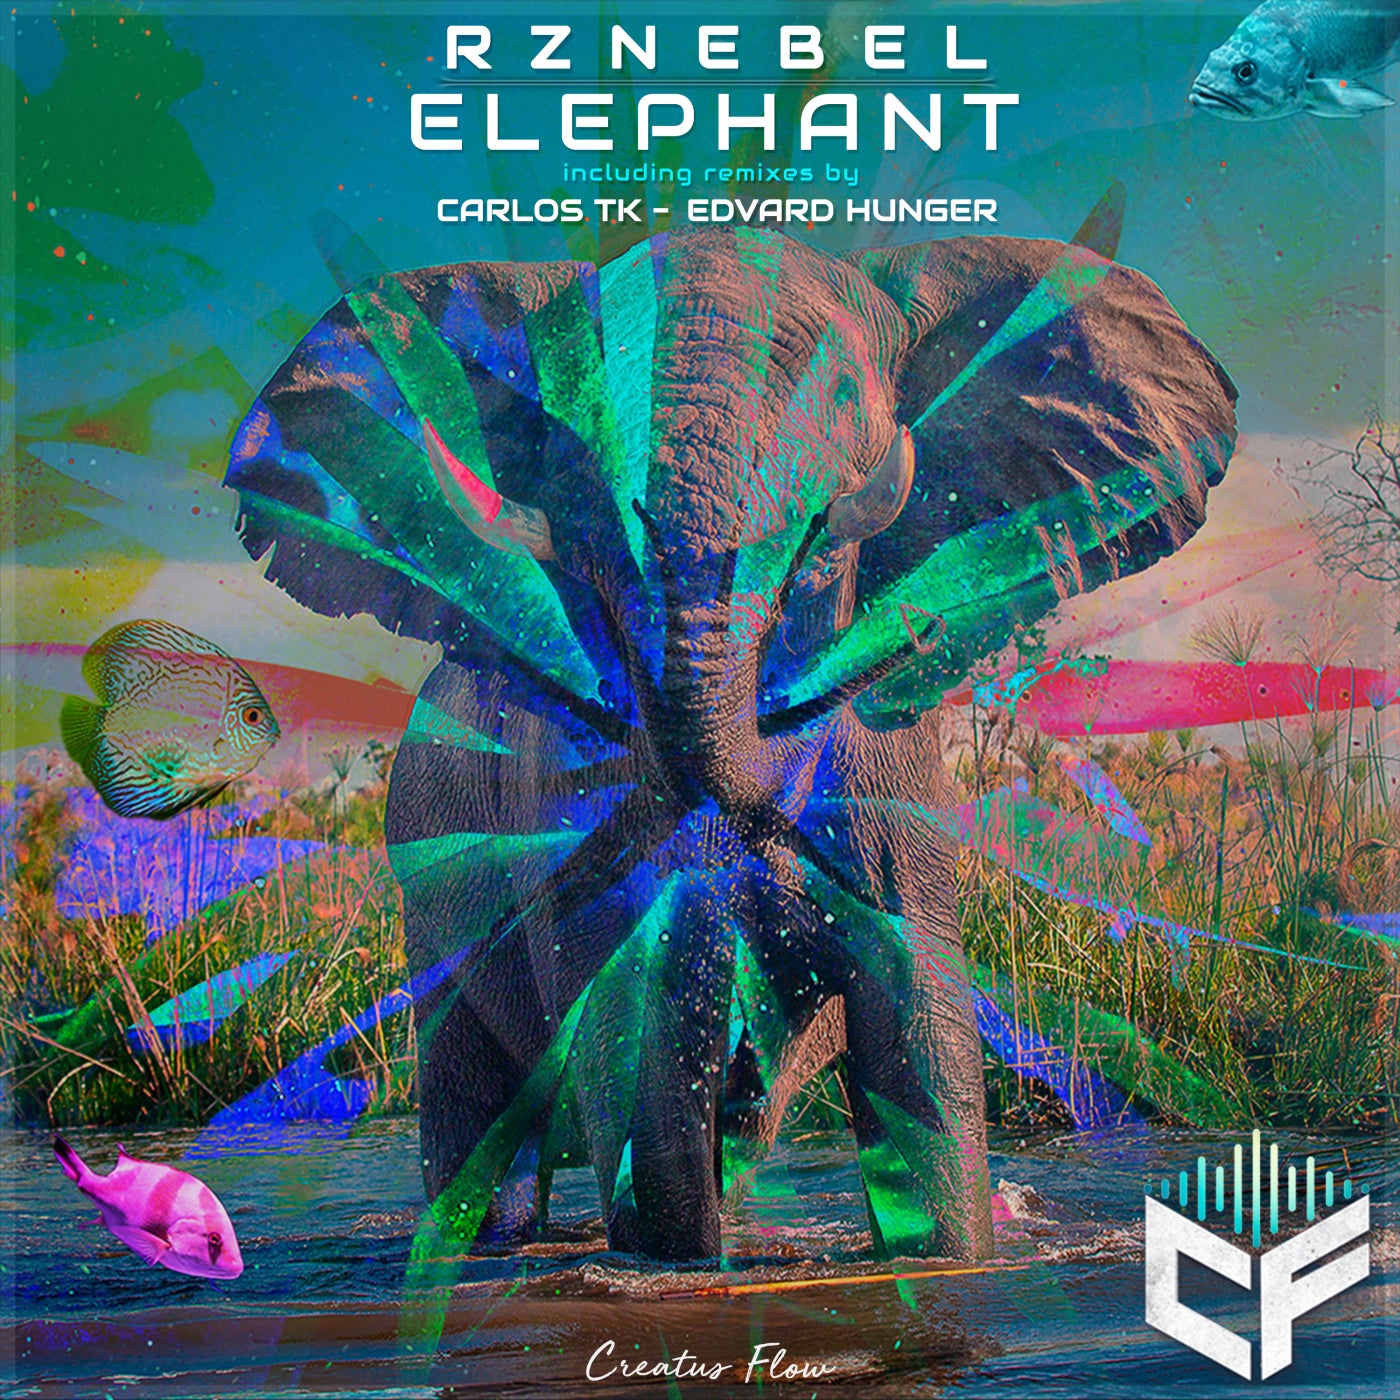 Elephant remix. Osiris Rhyme Remix Elephant. Stylust, Ashez - the Elephant (Original Mix).